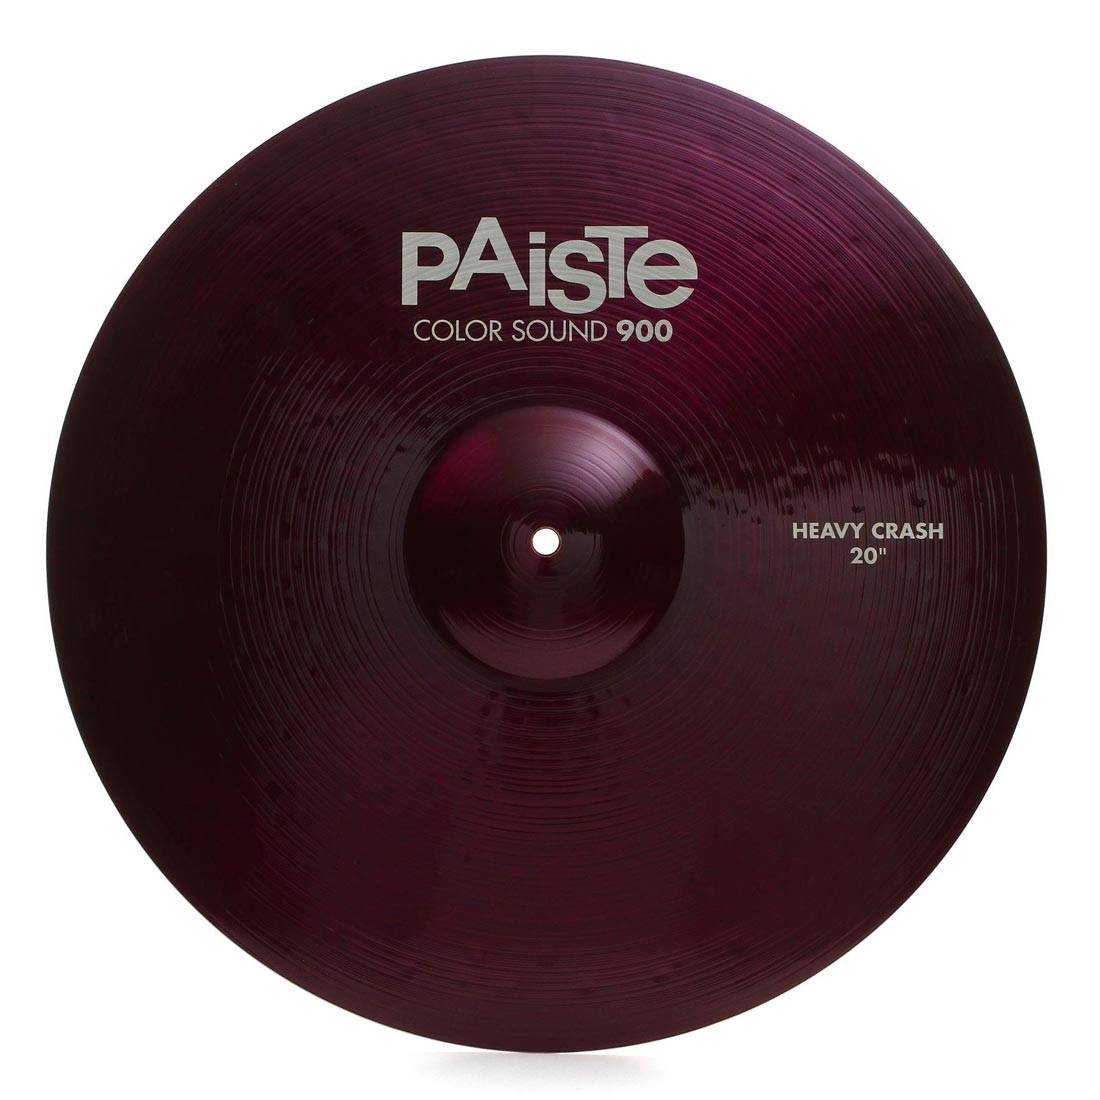 PAISTE 900 Color Sound 20'' Purple Heavy Crash Cymbal